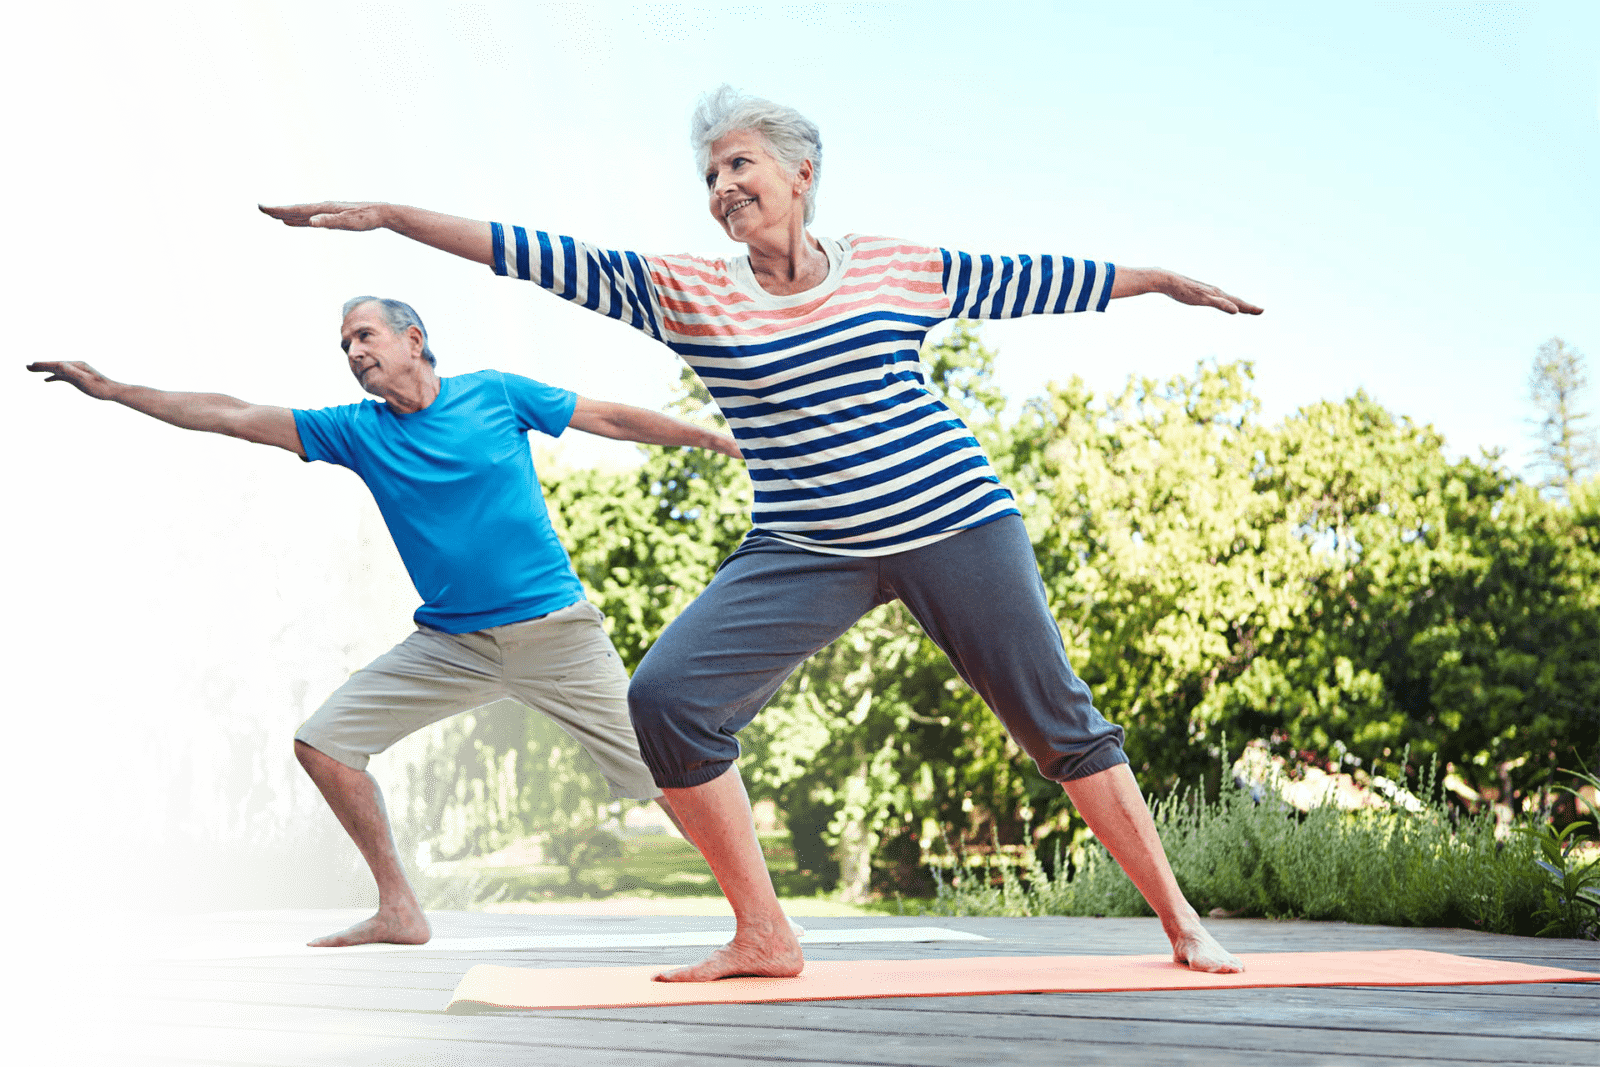 Организма в любом возрасте. Физическая активность пожилых. Активный образ жизни. Энергичные пожилые люди. Здоровый образ жизни для пожилых людей.